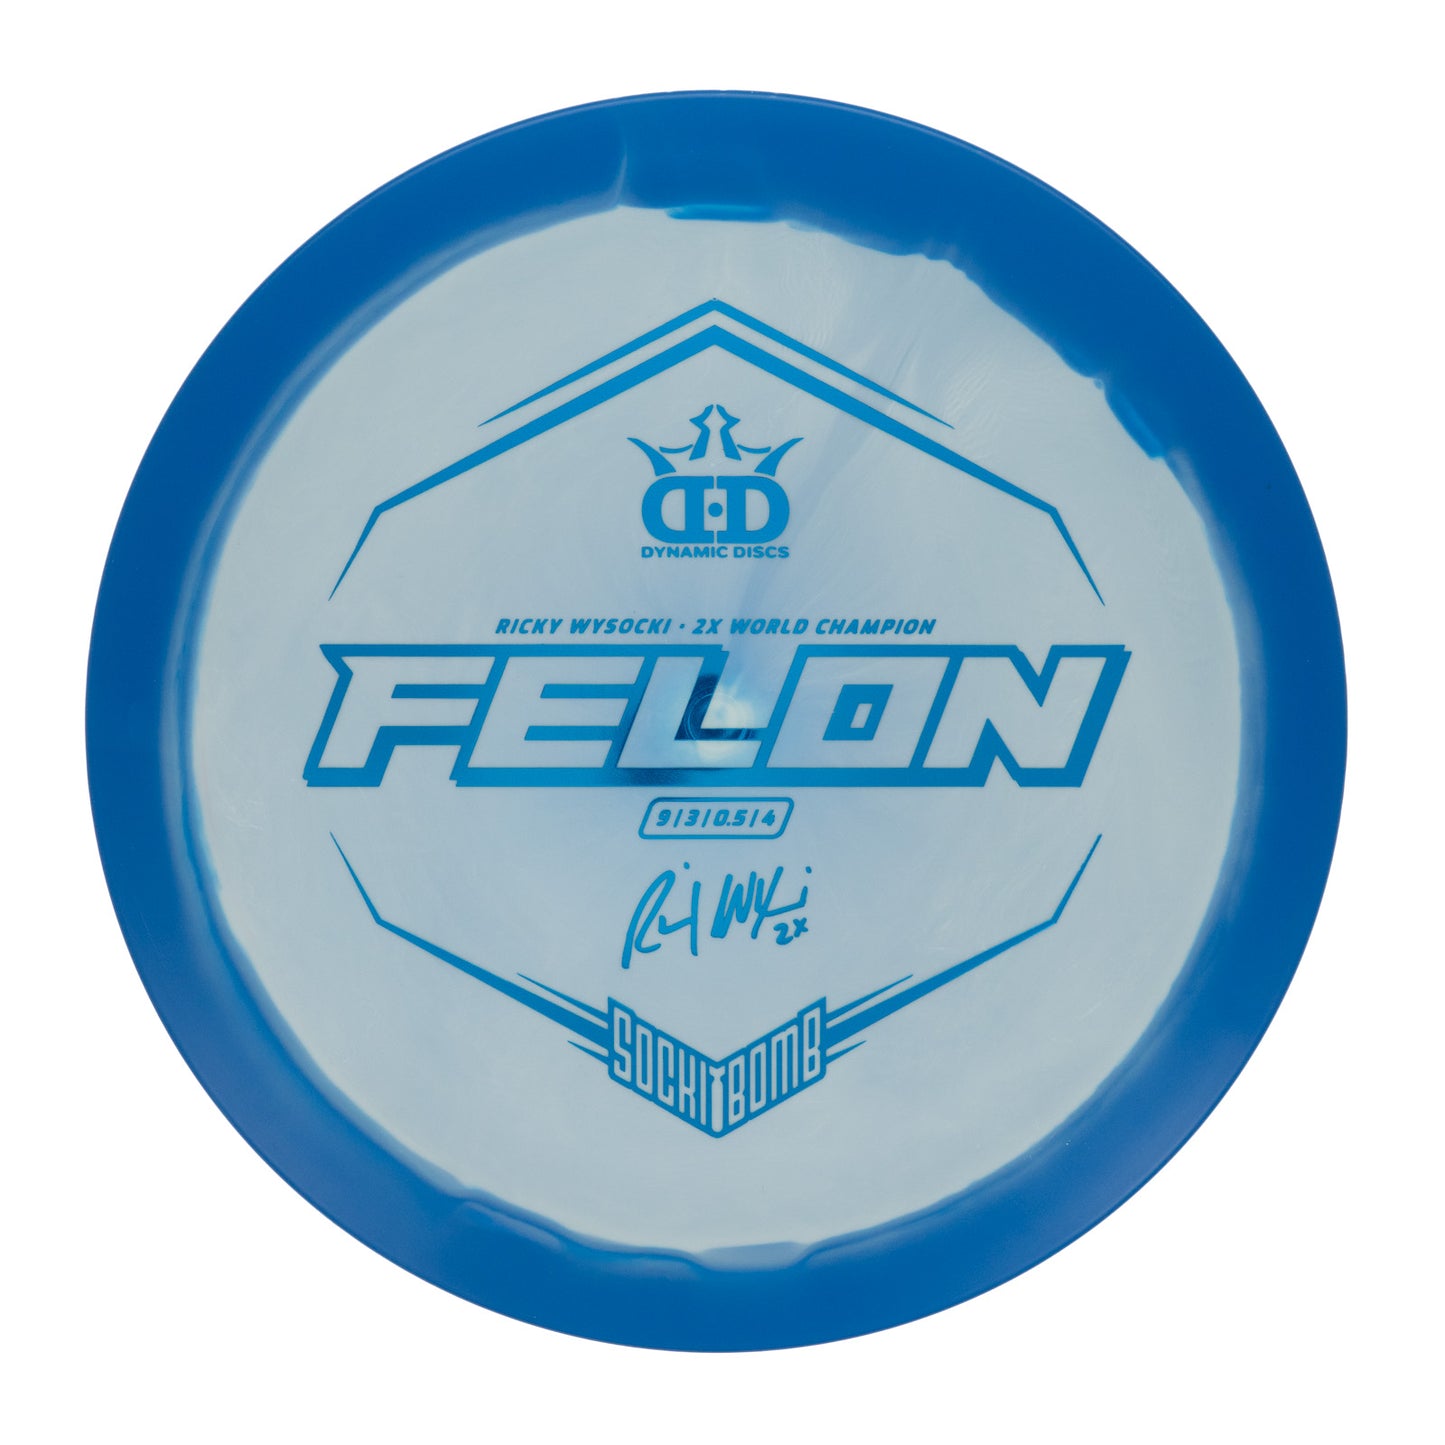 Dynamic Discs Felon - Ricky Wysocki Sockibomb Stamp Fuzion Orbit 174g | Style 0003